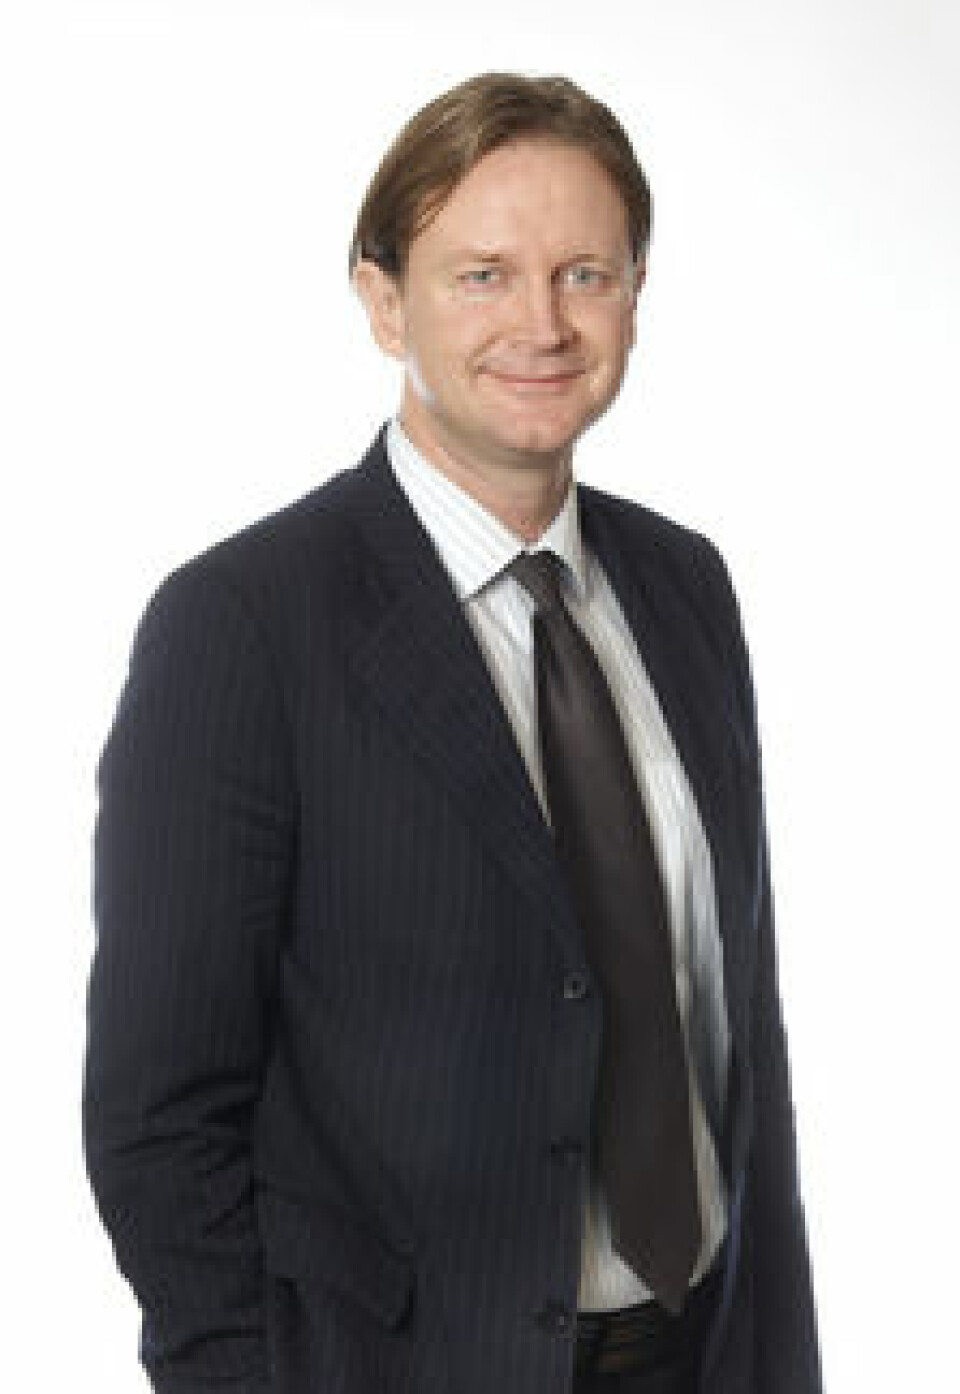 Advokat og partner i Grette, Jens KristianJohansen.